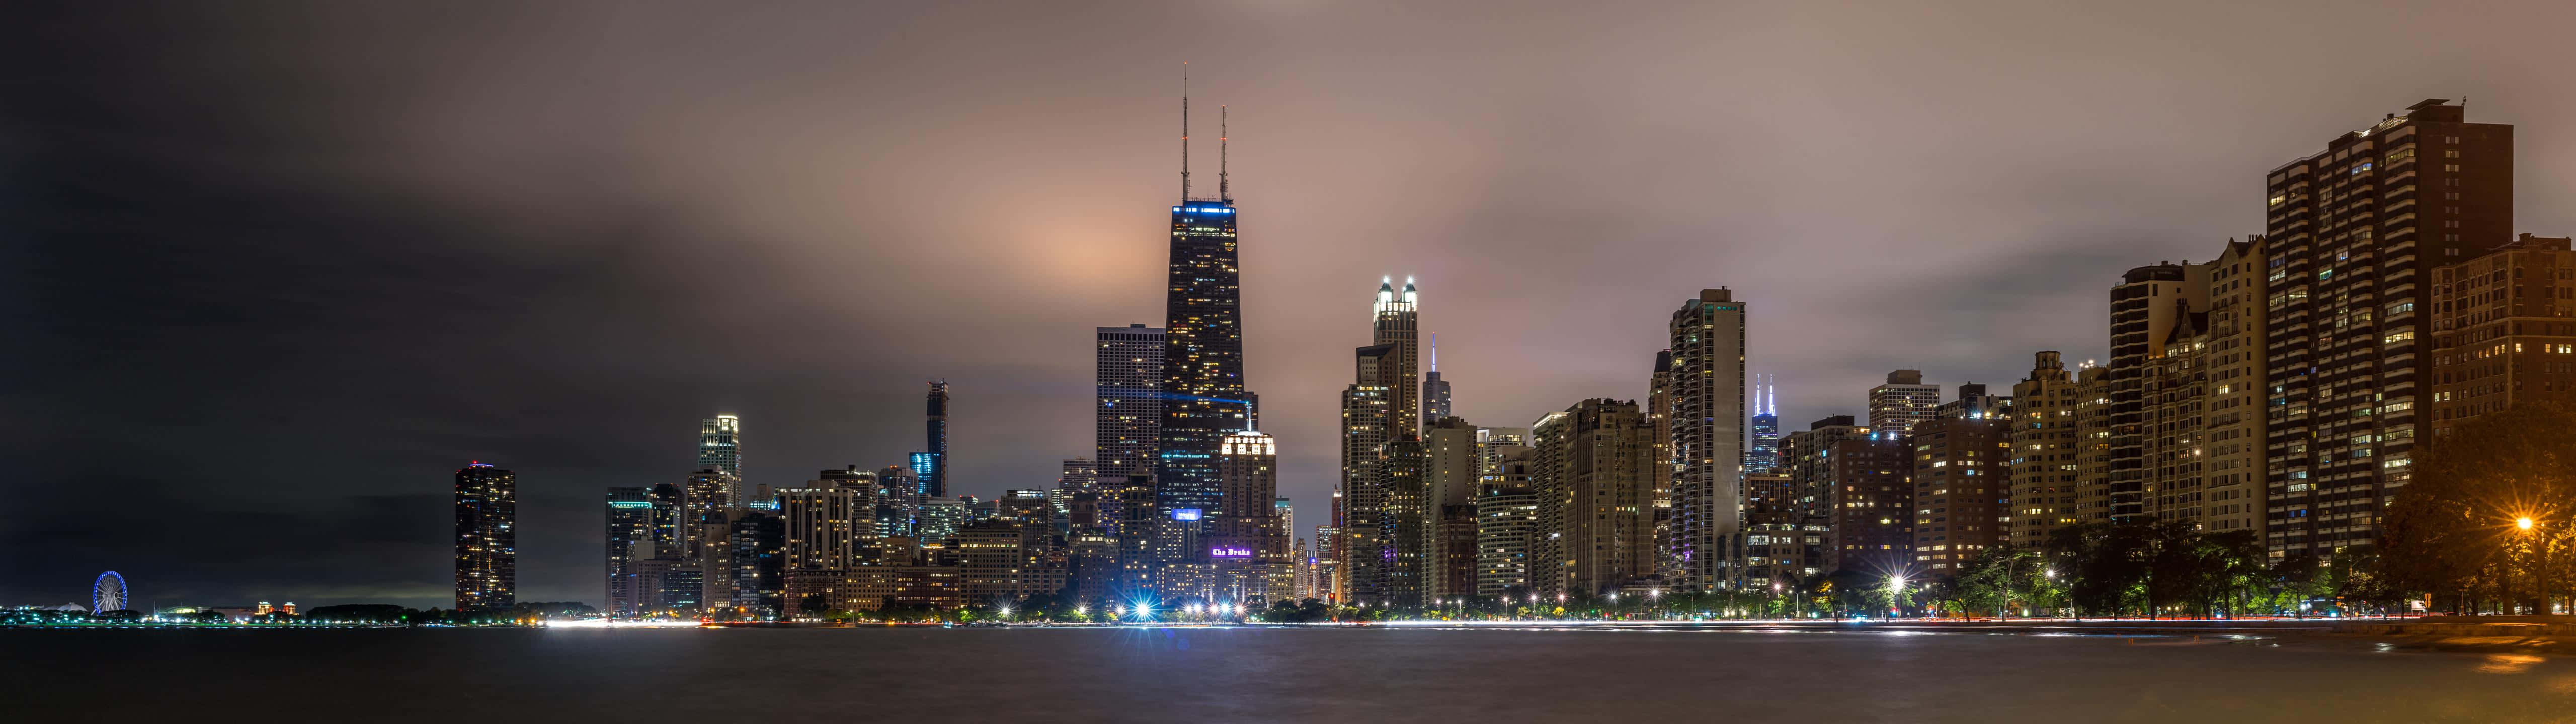 Chicago Skyline Best Monitor Background